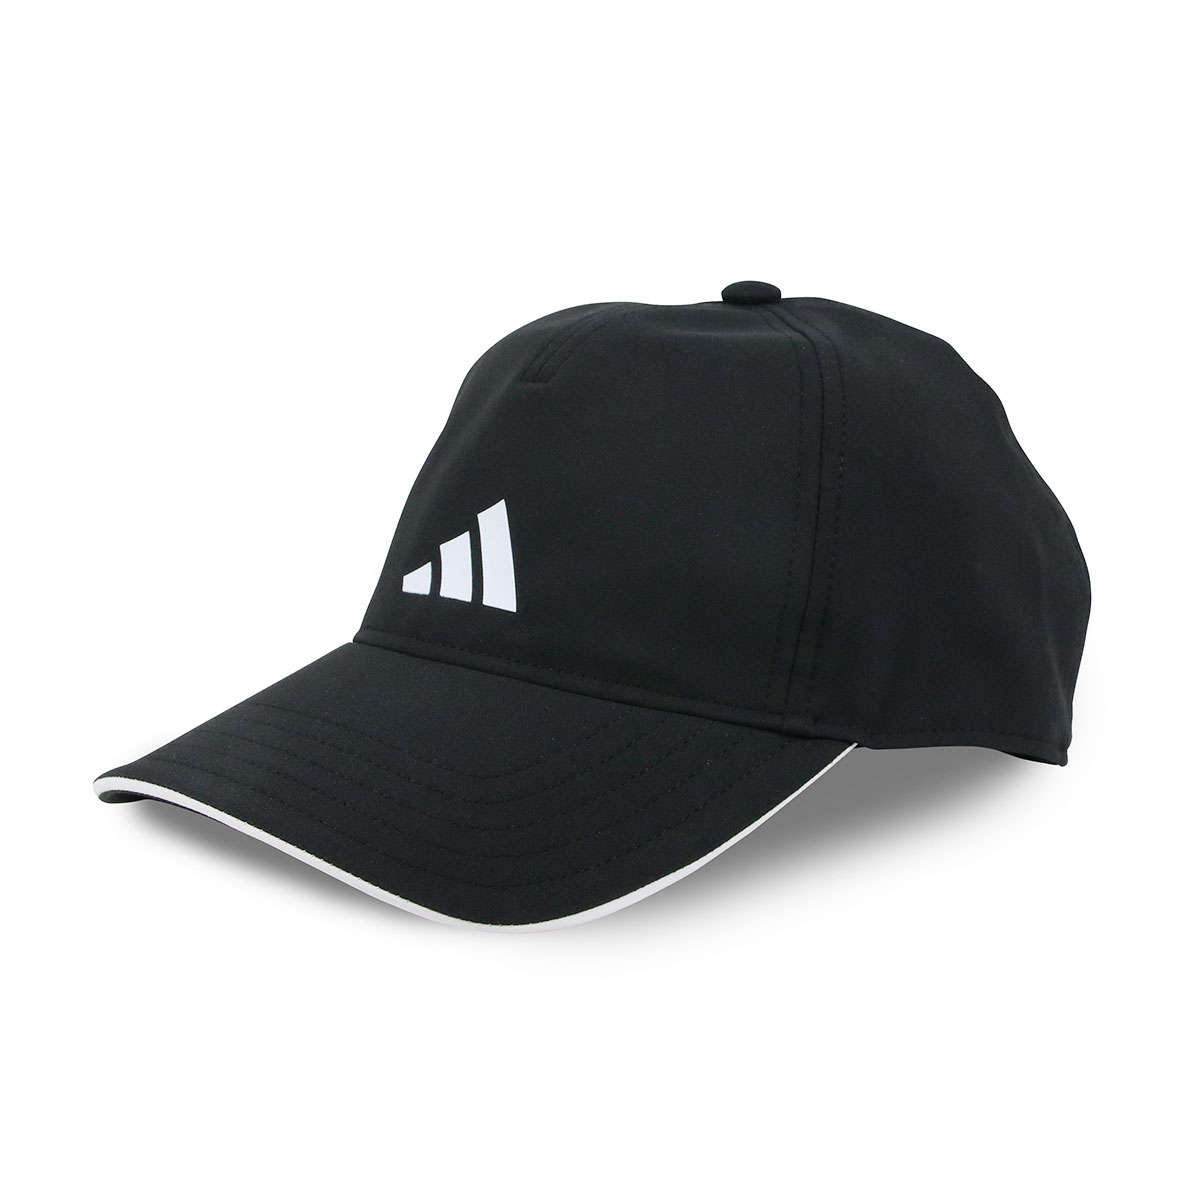 アディダス キャップ メンズ レディース 帽子 ブランド ロゴ ユニセックス スポーツ ブラック 黒 ホワイト 白 adidas AEROREADY 